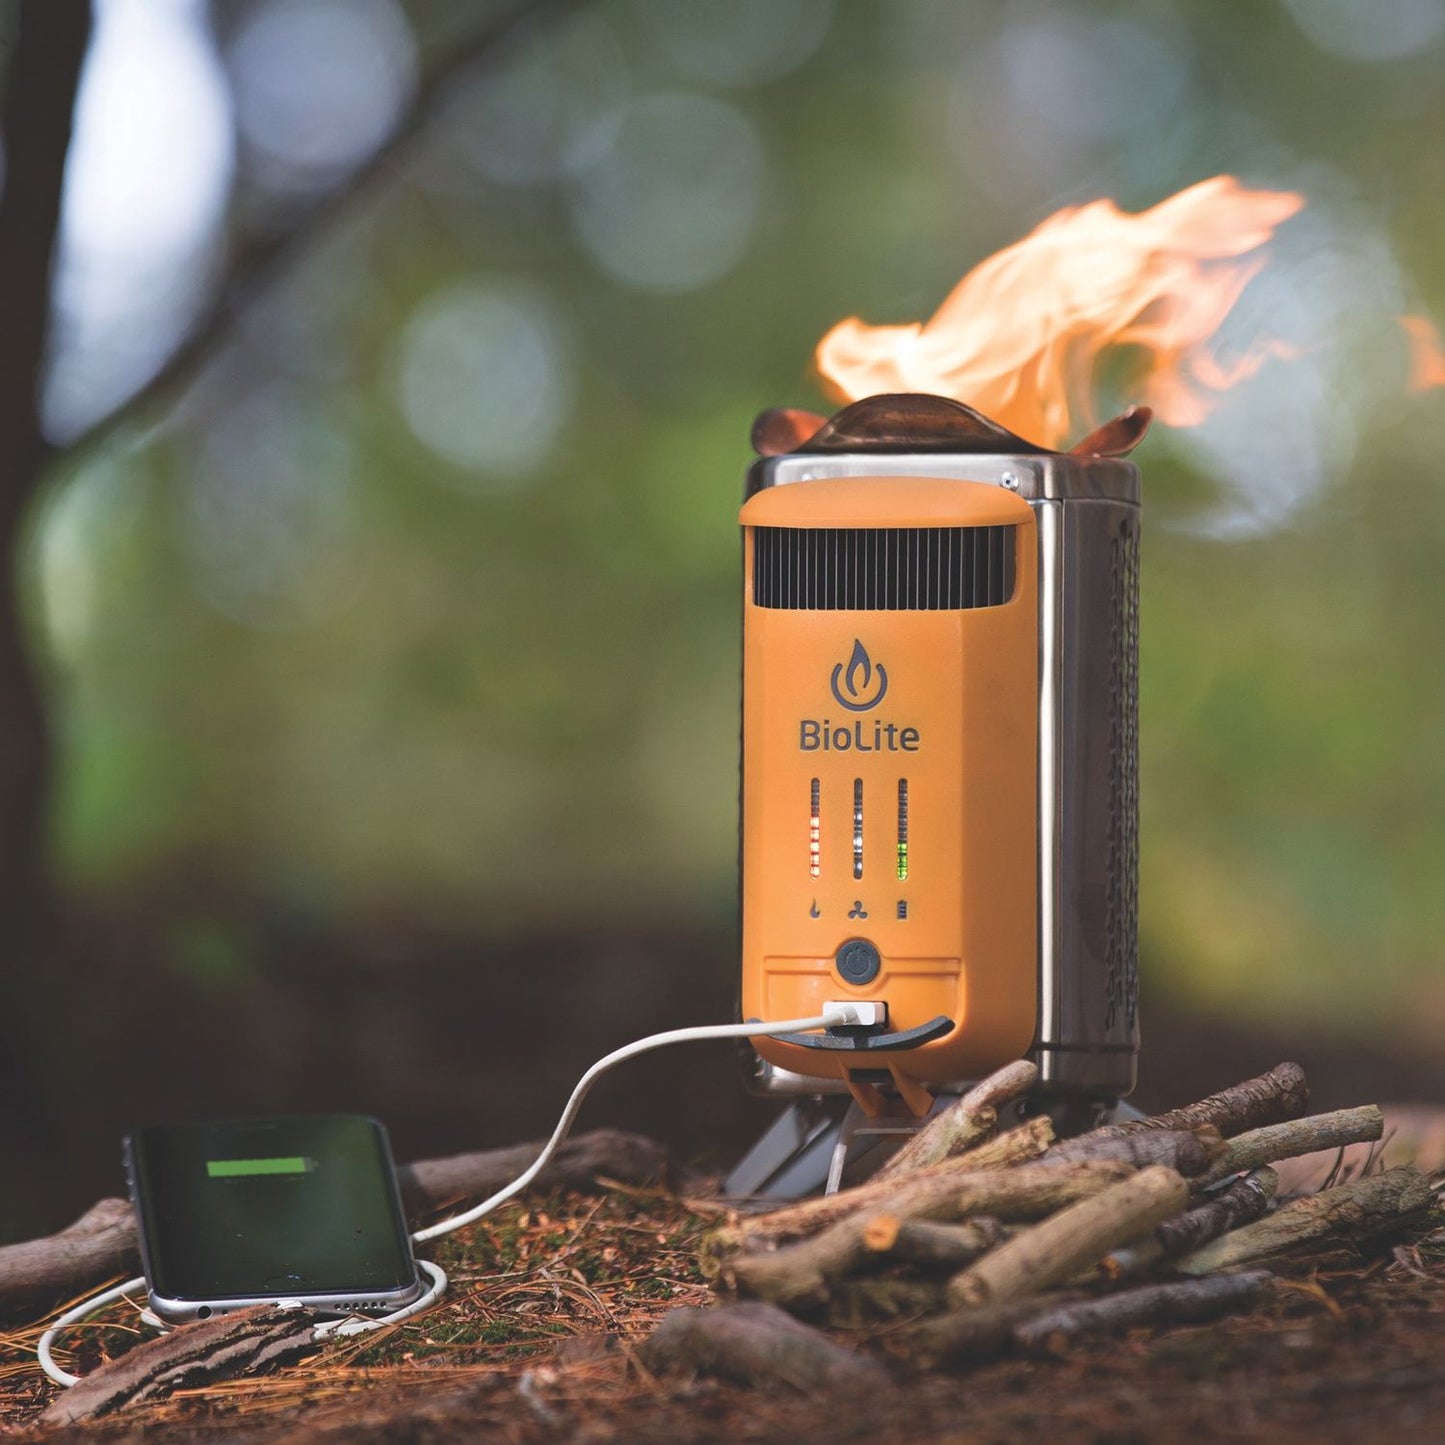 Réchaud de camping BioLite CampStove 2+ avec batterie rechargeable, port de chargement USB, FlexLight 100